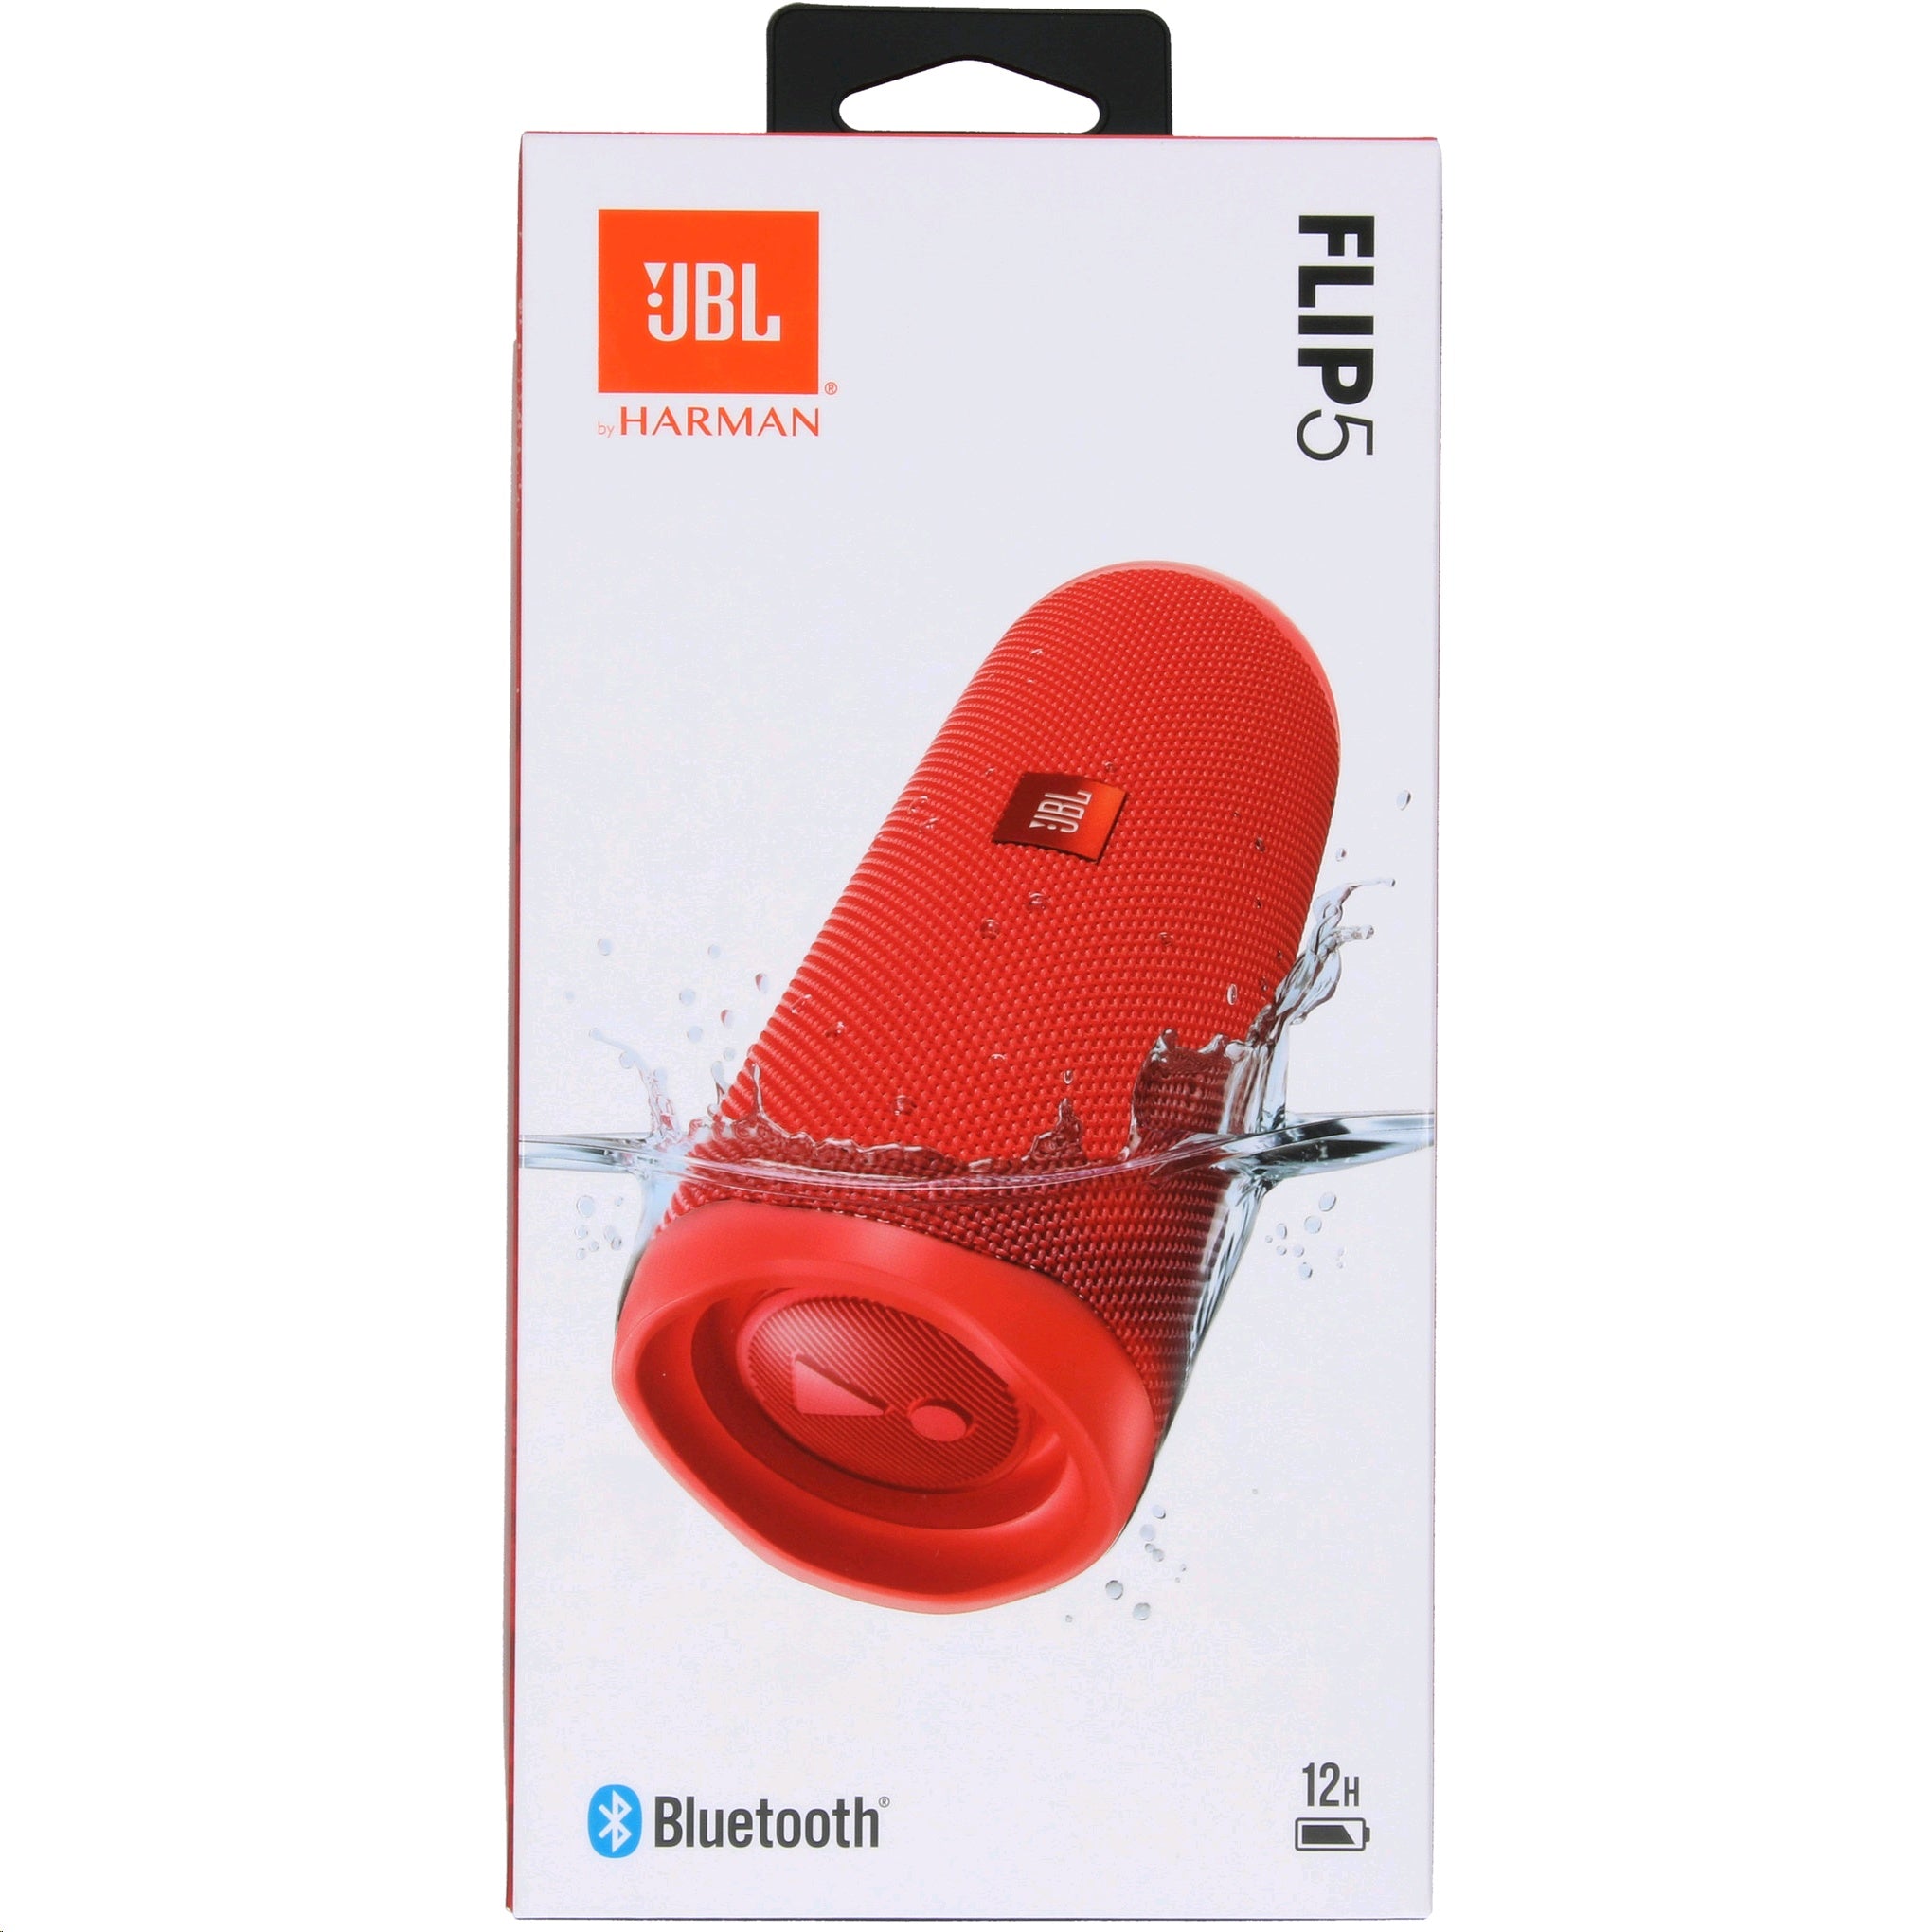 JBL Flip 5 Portable Waterproof Wireless Bluetooth Speaker with up